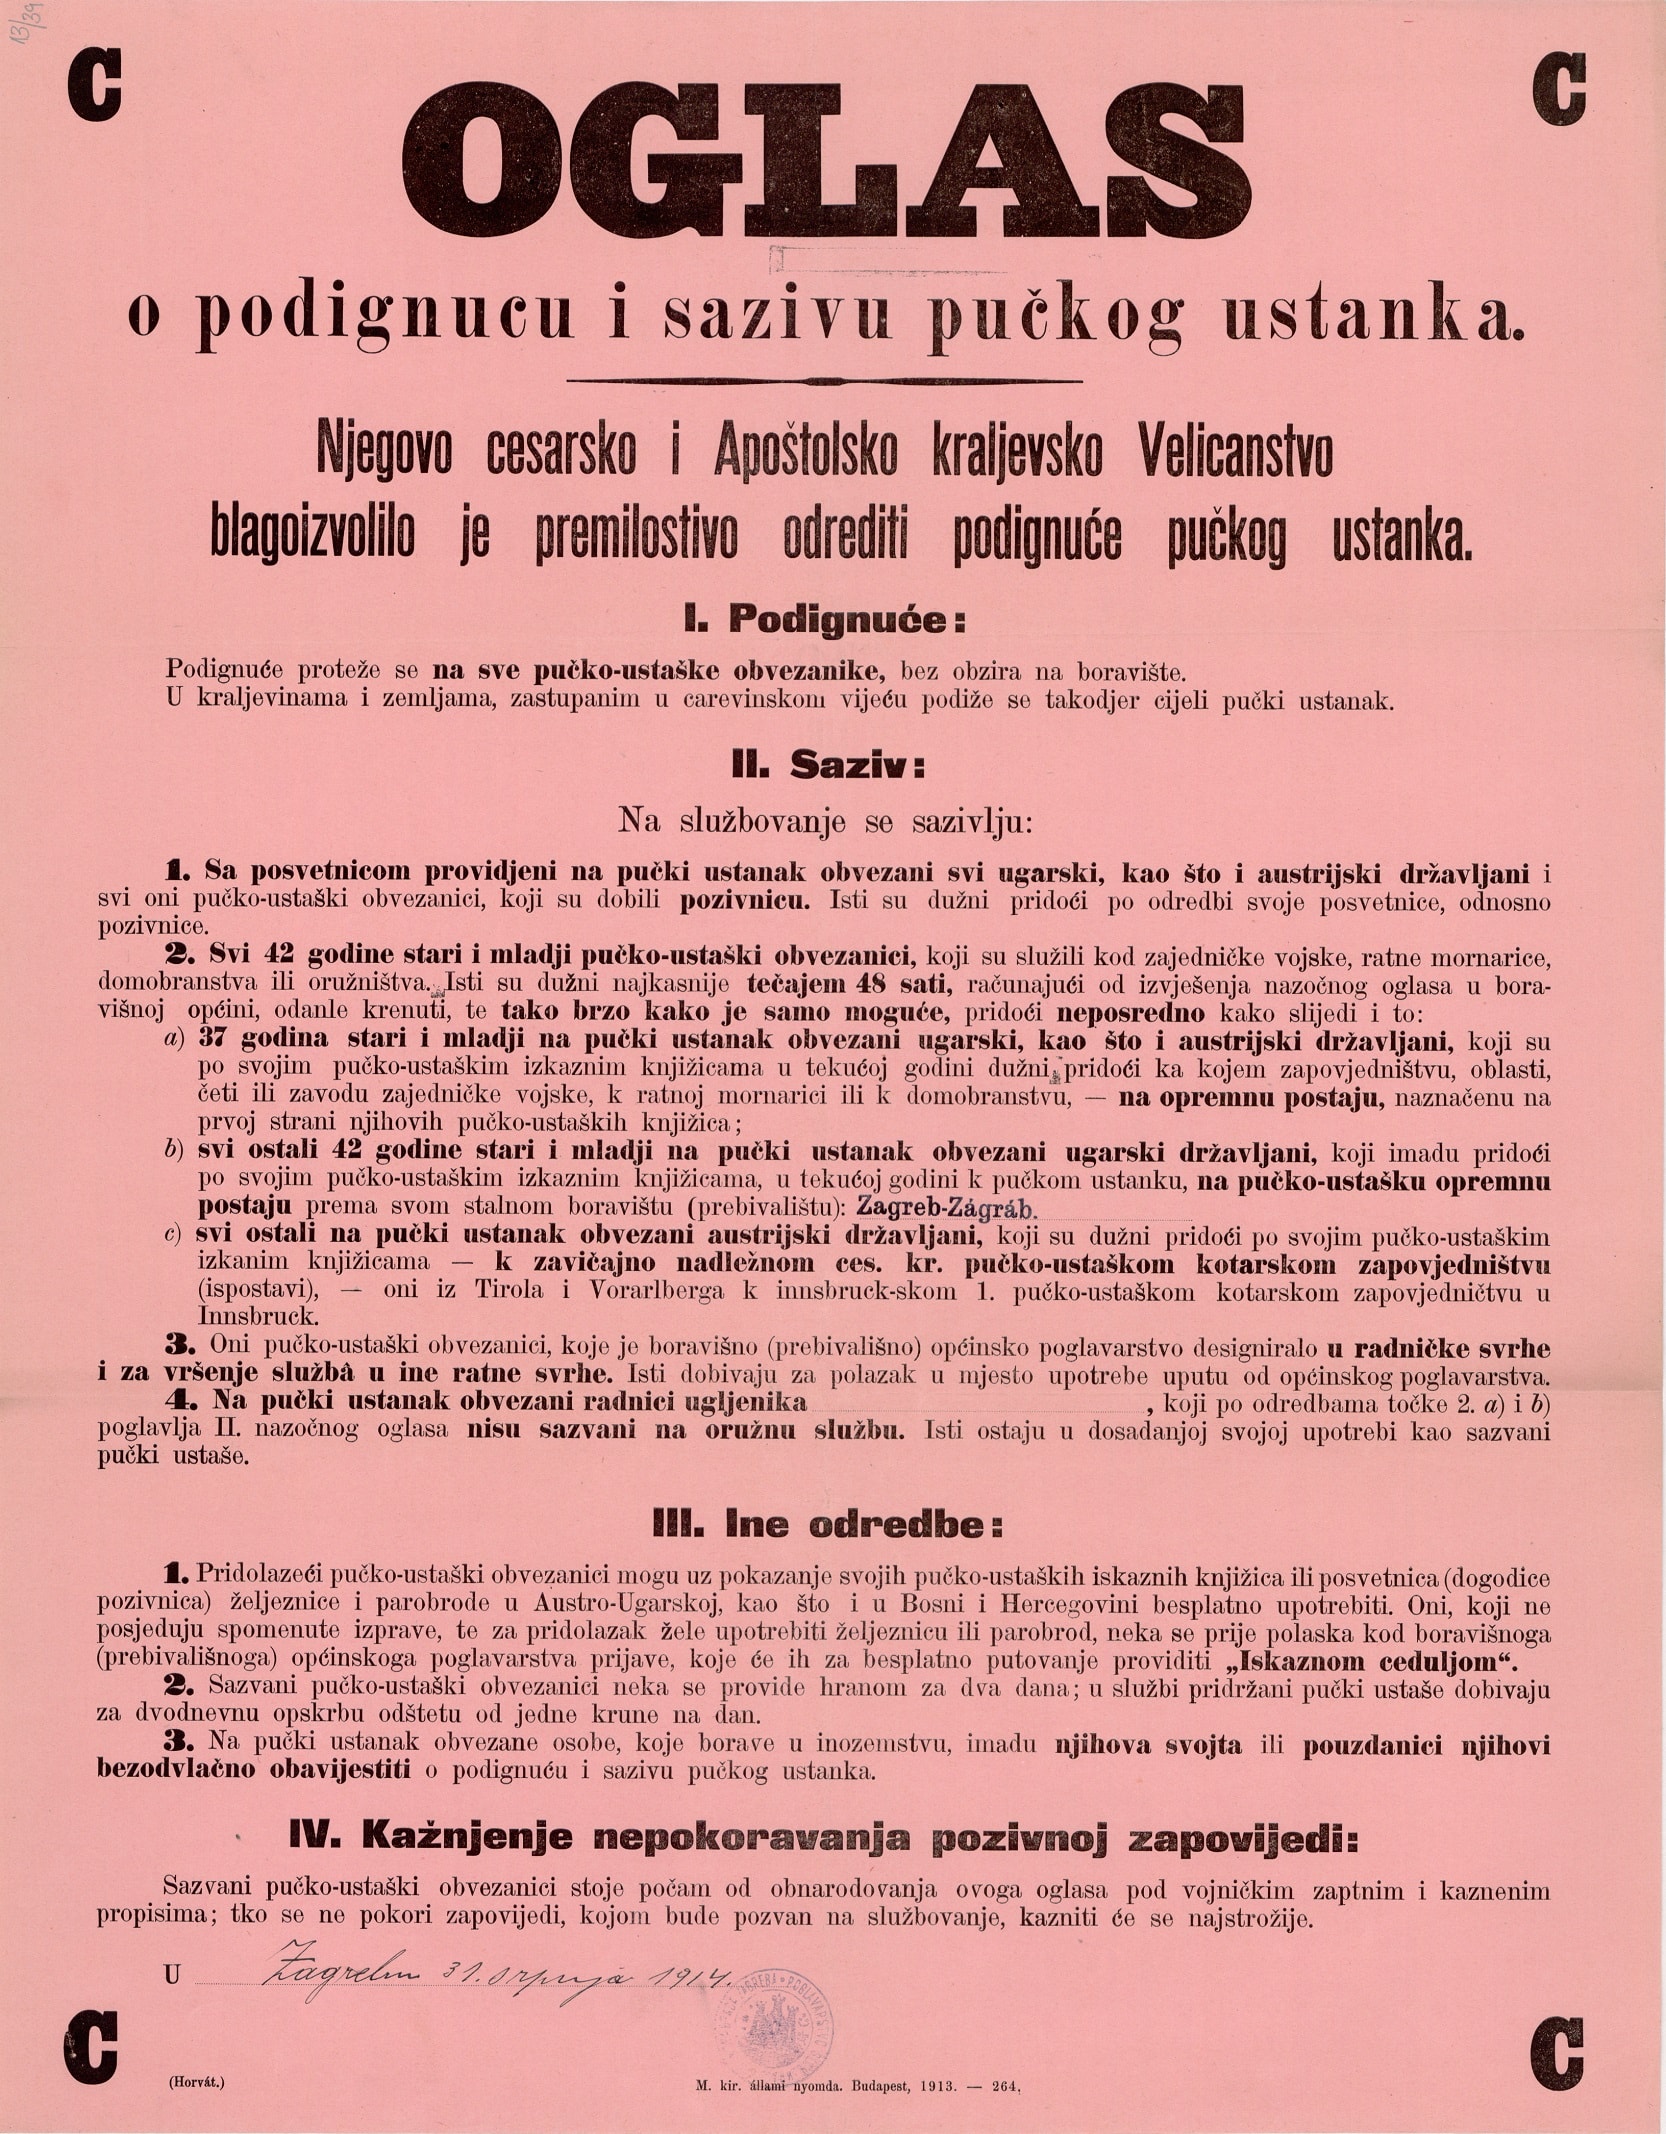 Oglas o podignuću i sazivu pučkog ustanka (HR-HDA-907. Zbirka stampata, br. 1/41)